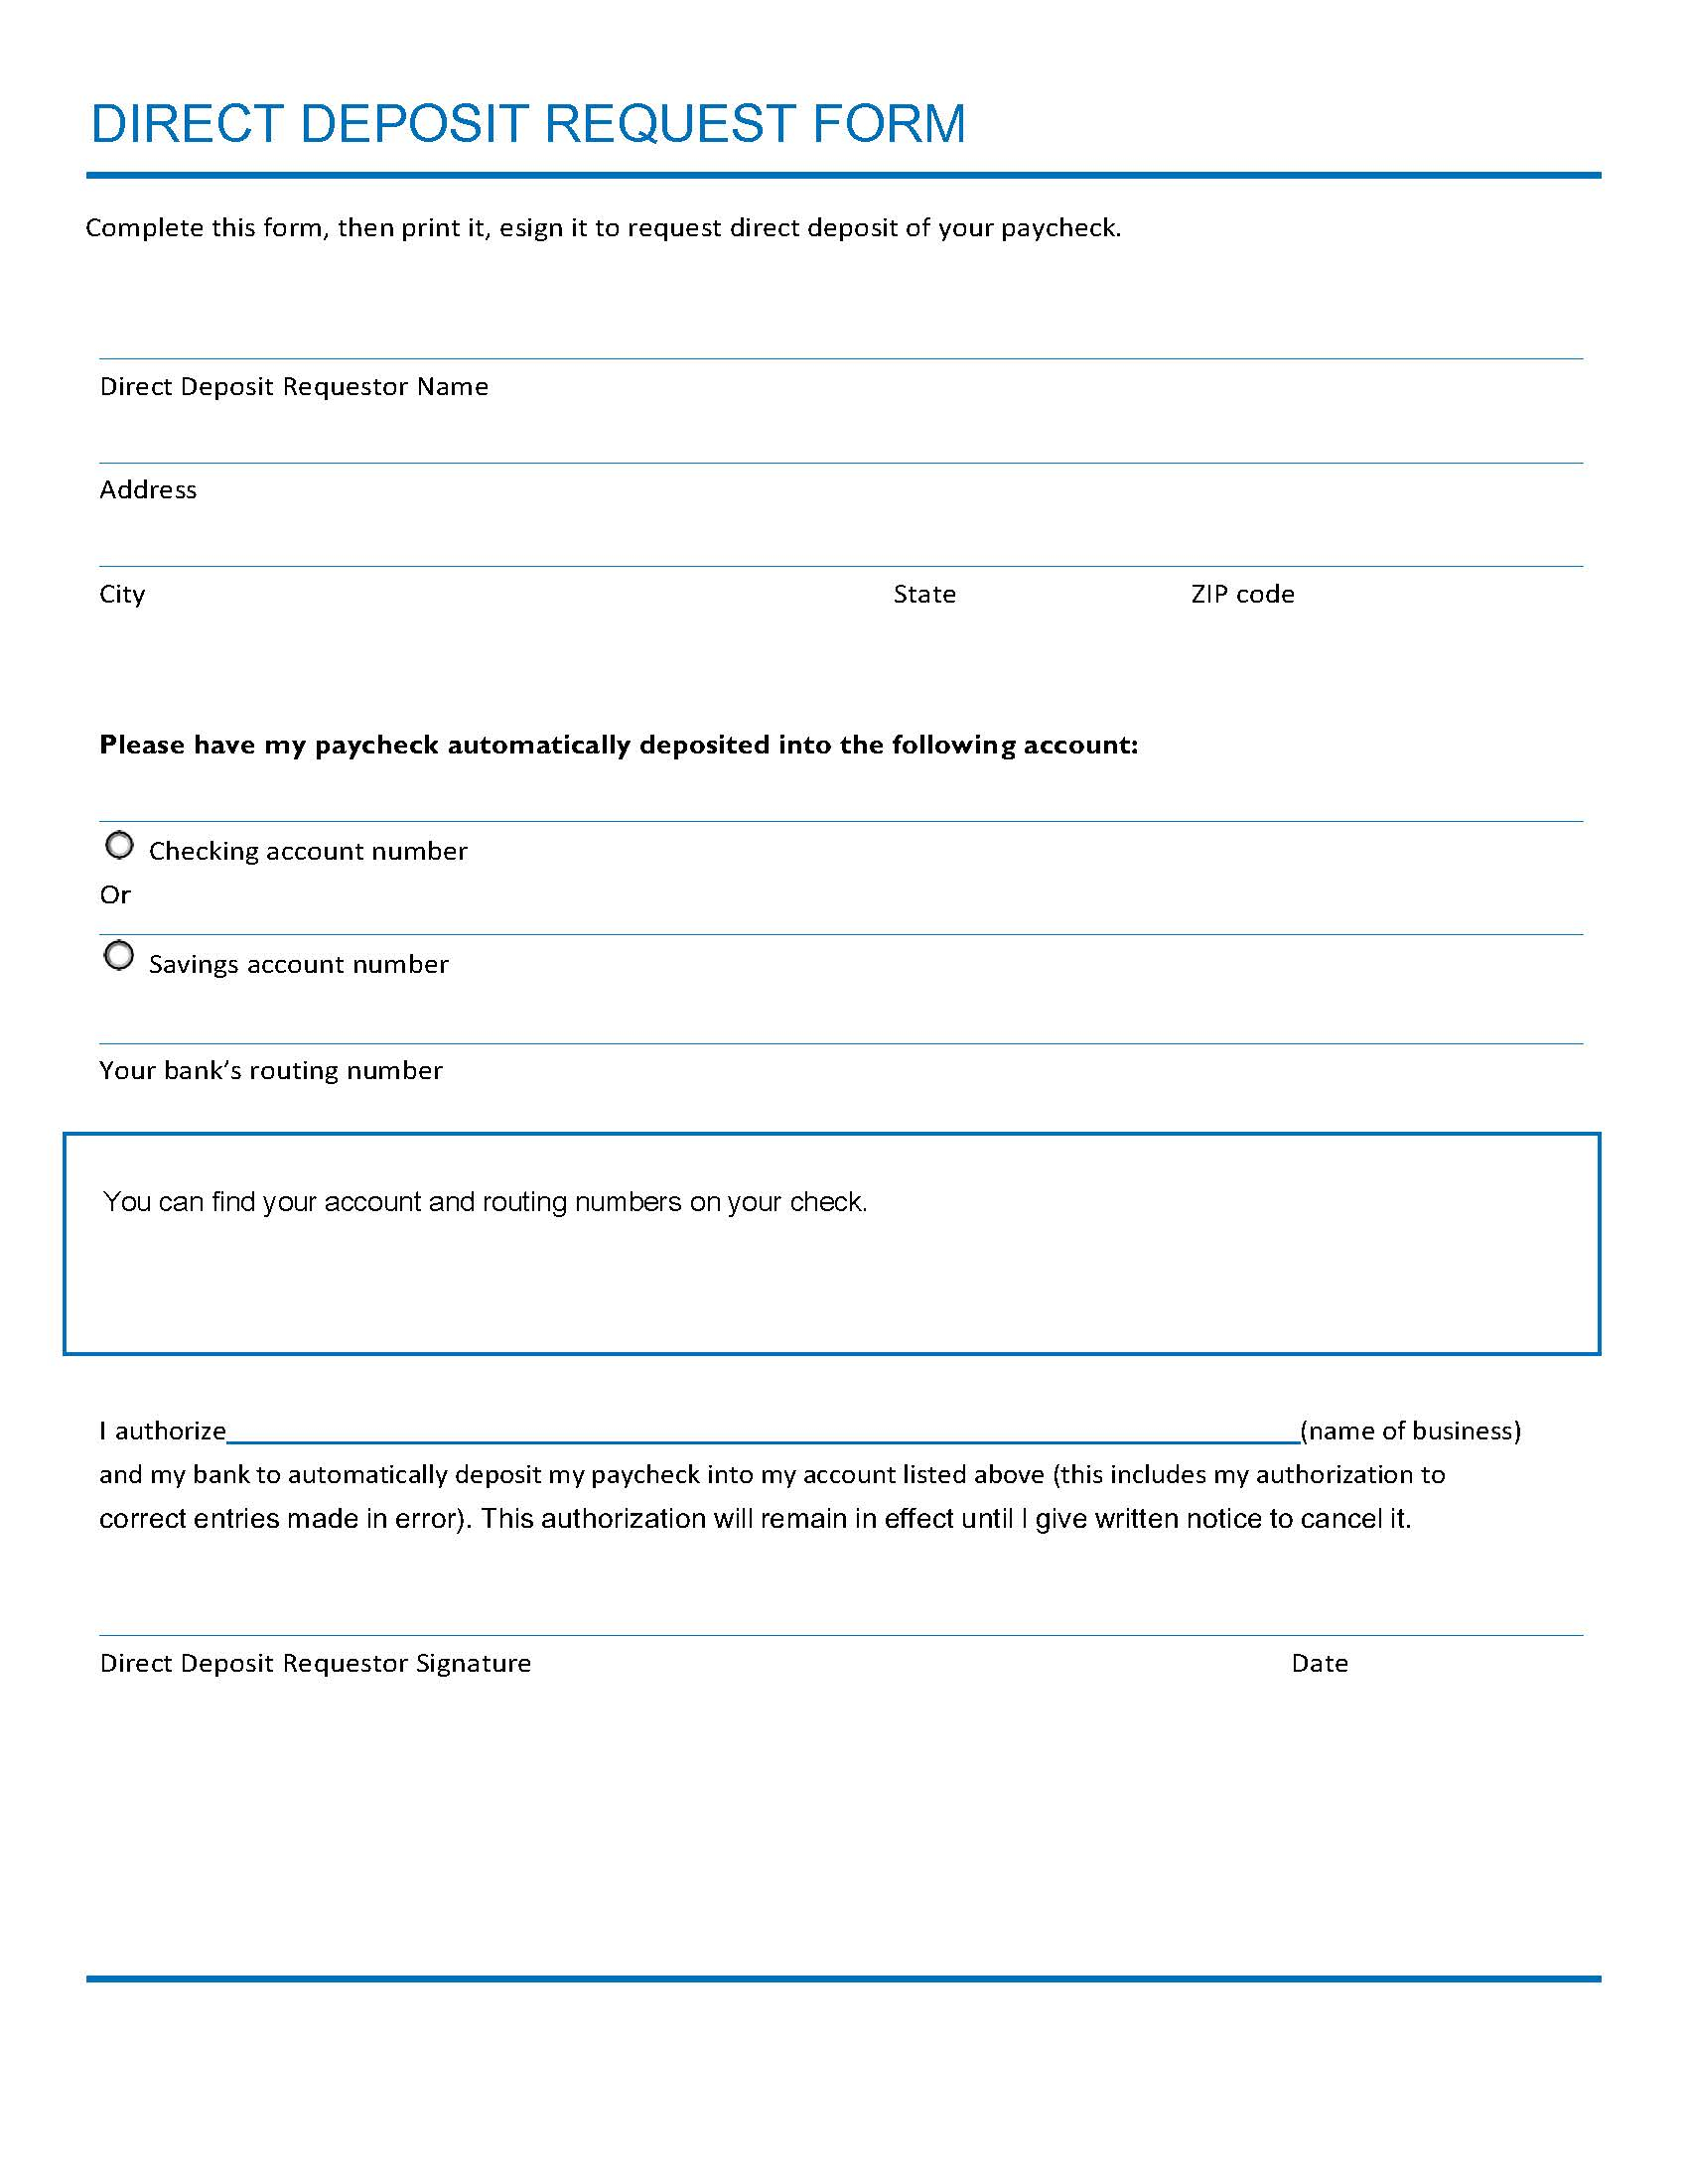 Blank Direct Deposit Enrollment Form Online  eSign Genie For Employee Direct Deposit Enrollment Form Template For Employee Direct Deposit Enrollment Form Template